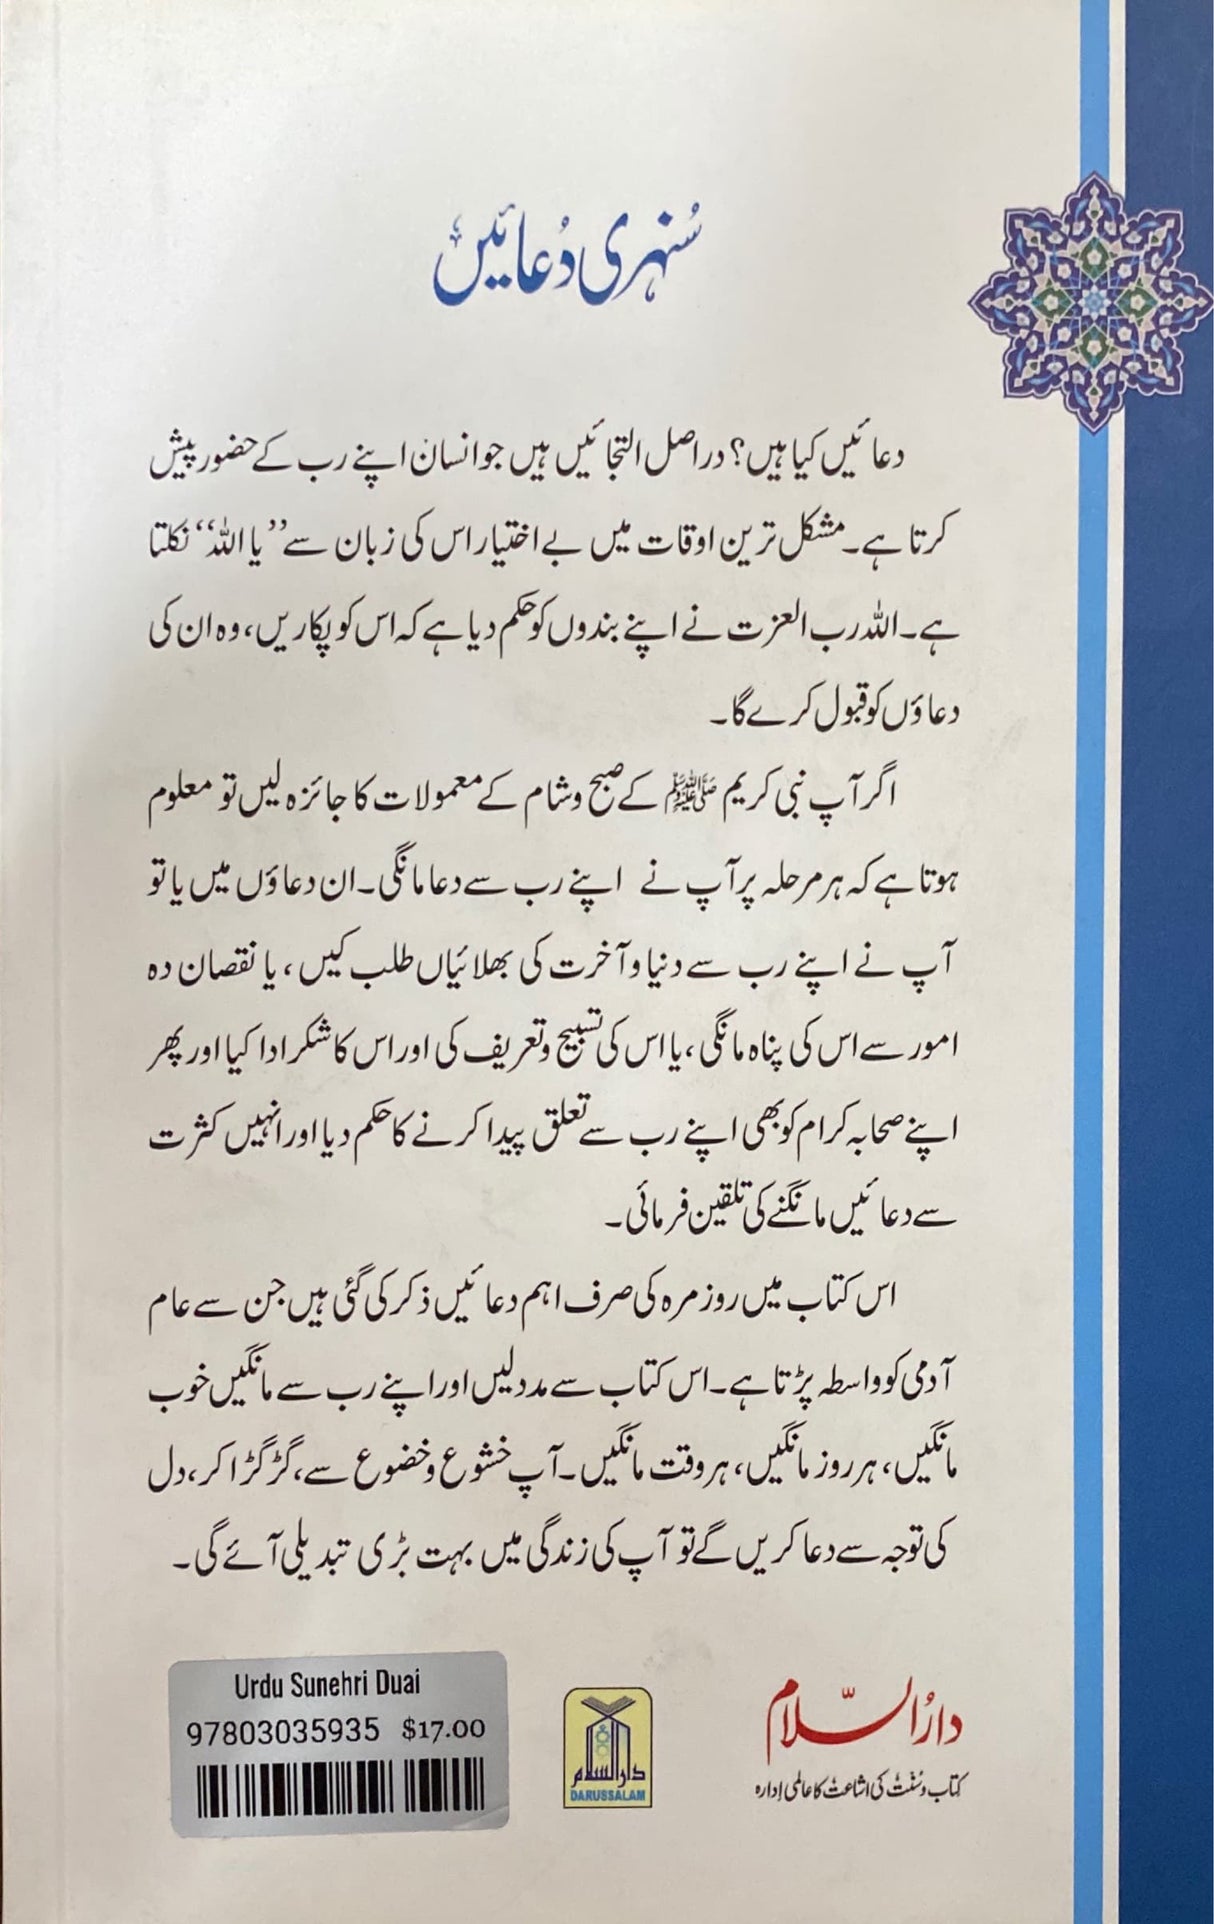 Urdu Sunehri Duai